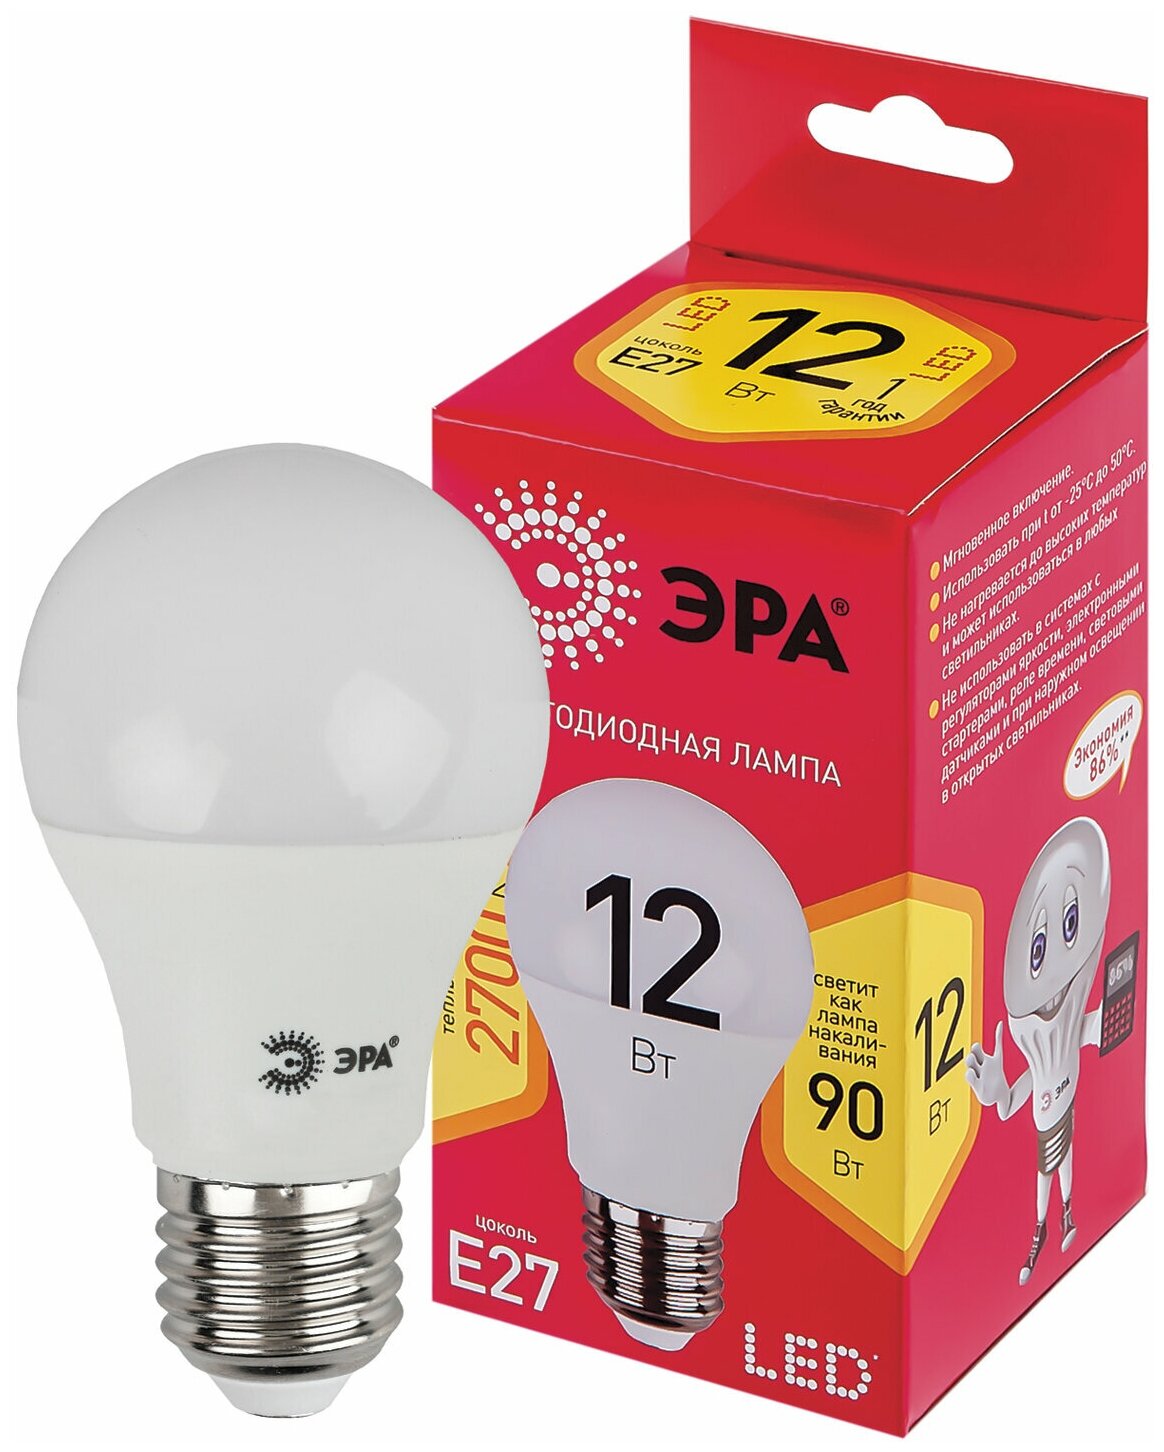 Лампа светодиодная ЭРА 12(90)Вт цоколь Е27 груша теплый белый 25000 ч LED A60-12W-3000-E27 Б0050197 (цена за 1 ед. товара)